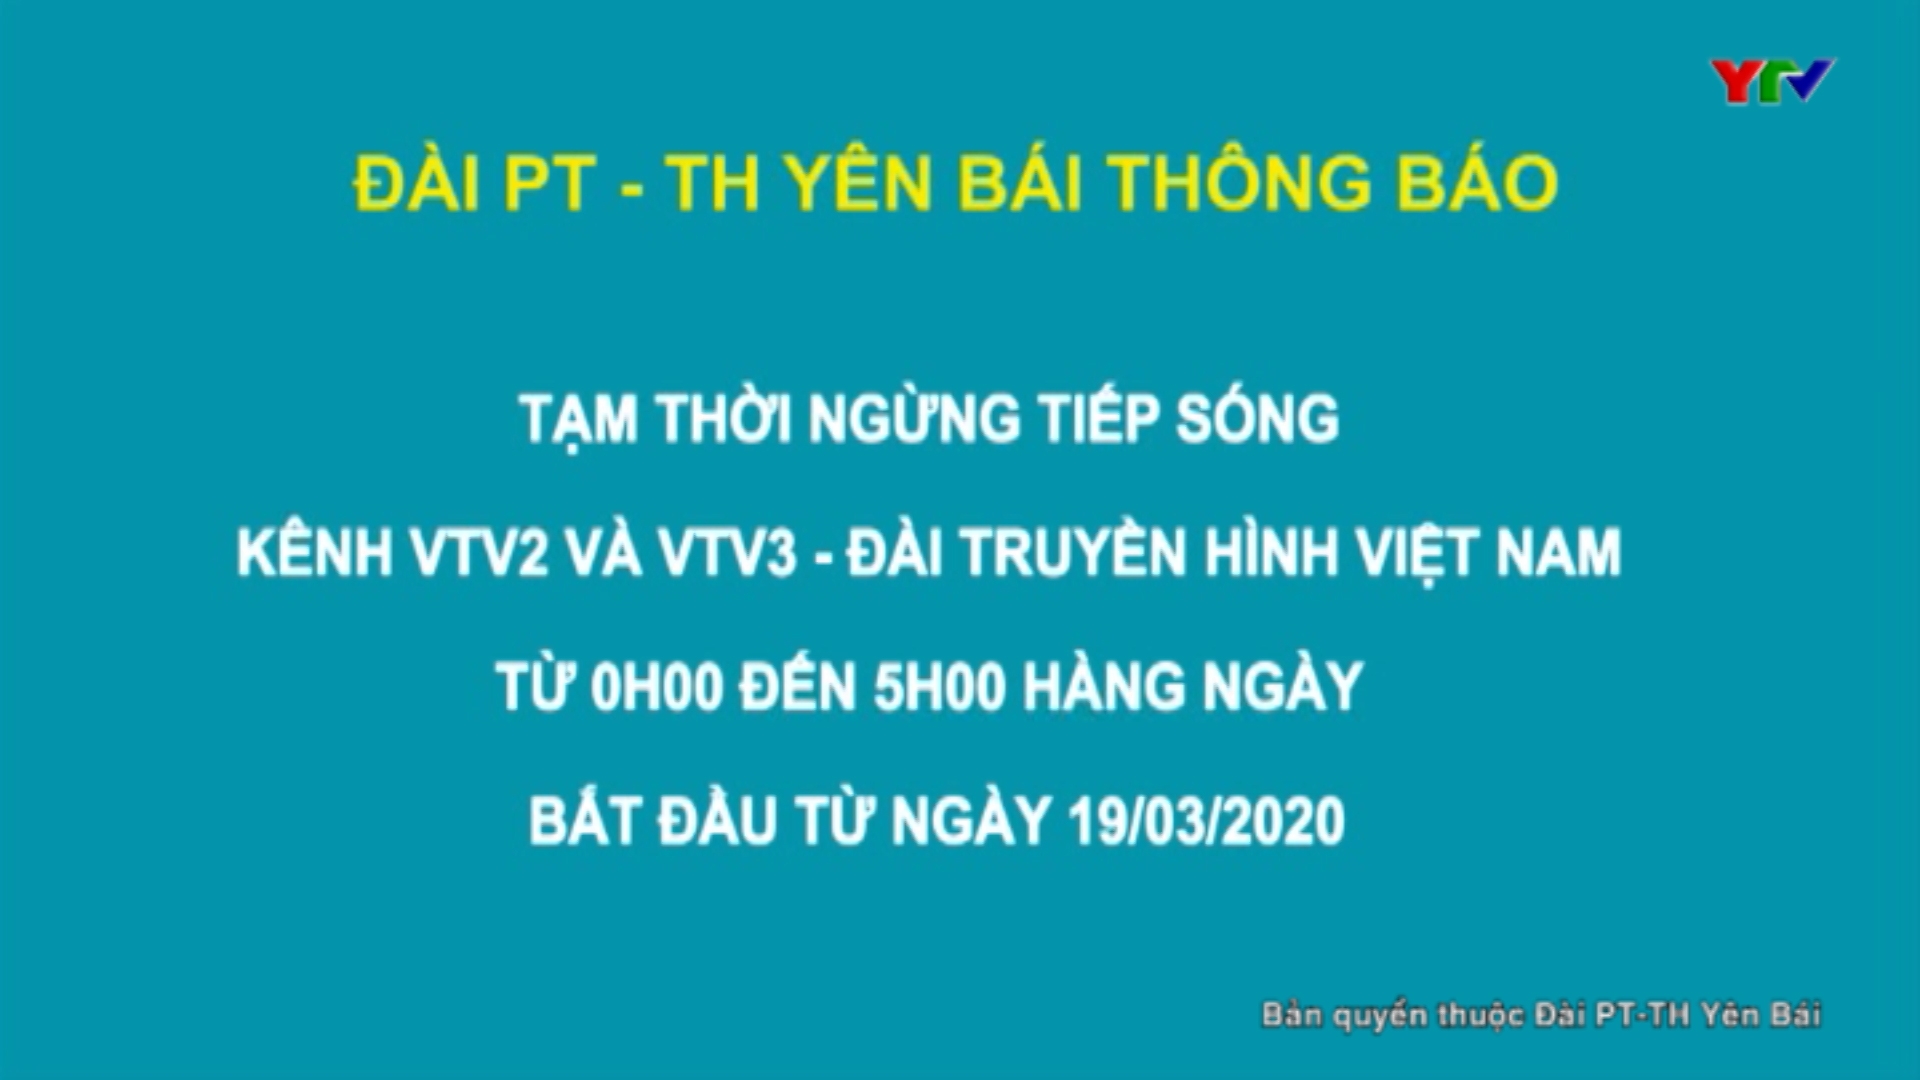 Đài PTTH Yên Bái tạm thời ngừng tiếp sóng kênh VTV2 và VTV3 từ 0h00-5h00 bắt đầu từ 19/3/2020